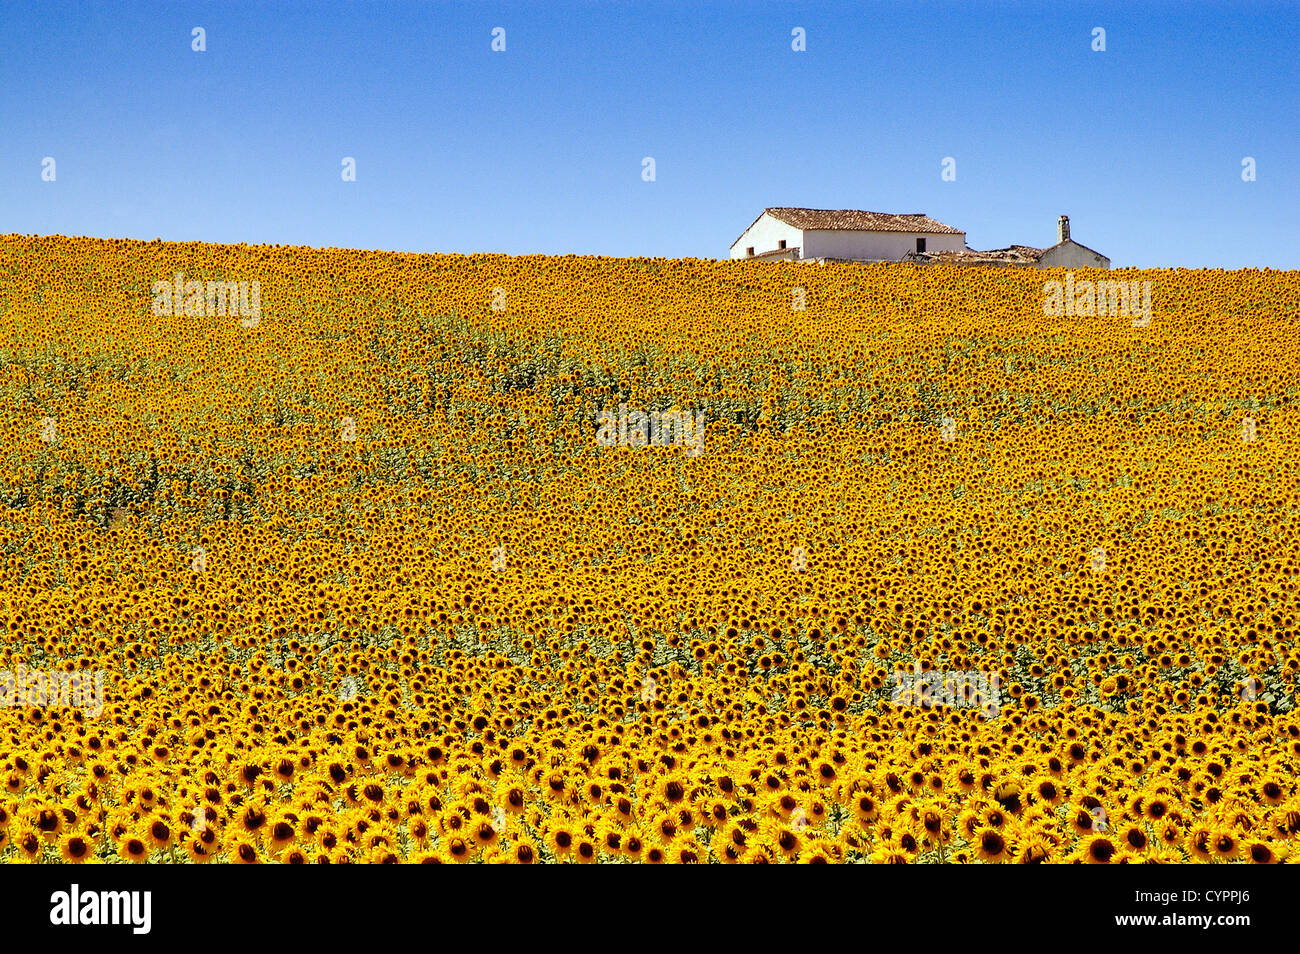 field of sunflowers in the province of Seville Andalusia Spain campo de girasoles en la provincia de sevilla andalucia españa Stock Photo